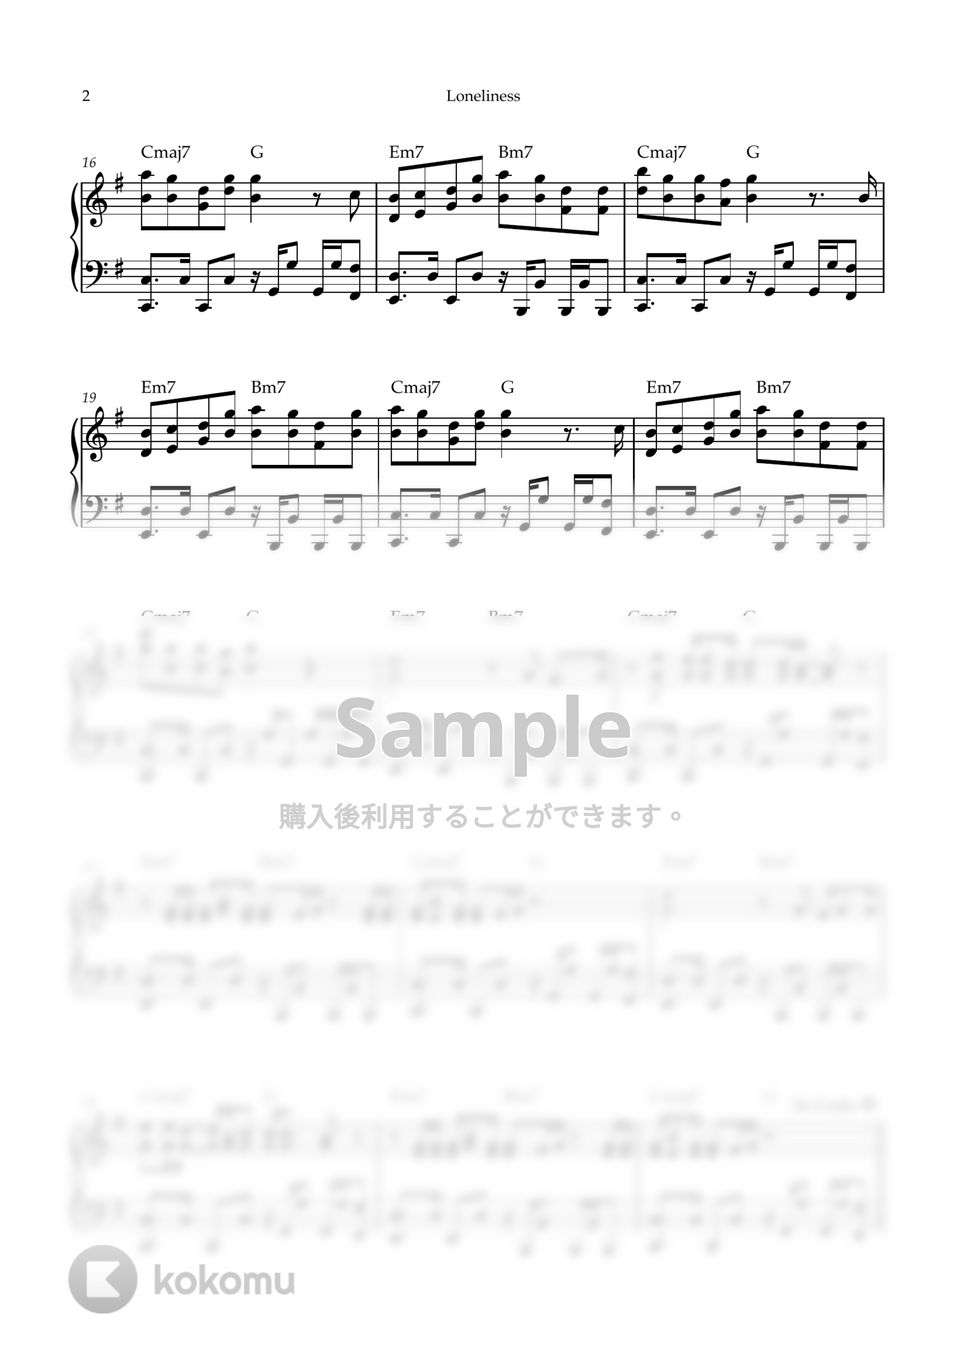 Mrs. GREEN APPLE - Loneliness (ピアノソロ/ANTENNA/Mrs. GREEN APPLE/Loneliness) by kanapiano